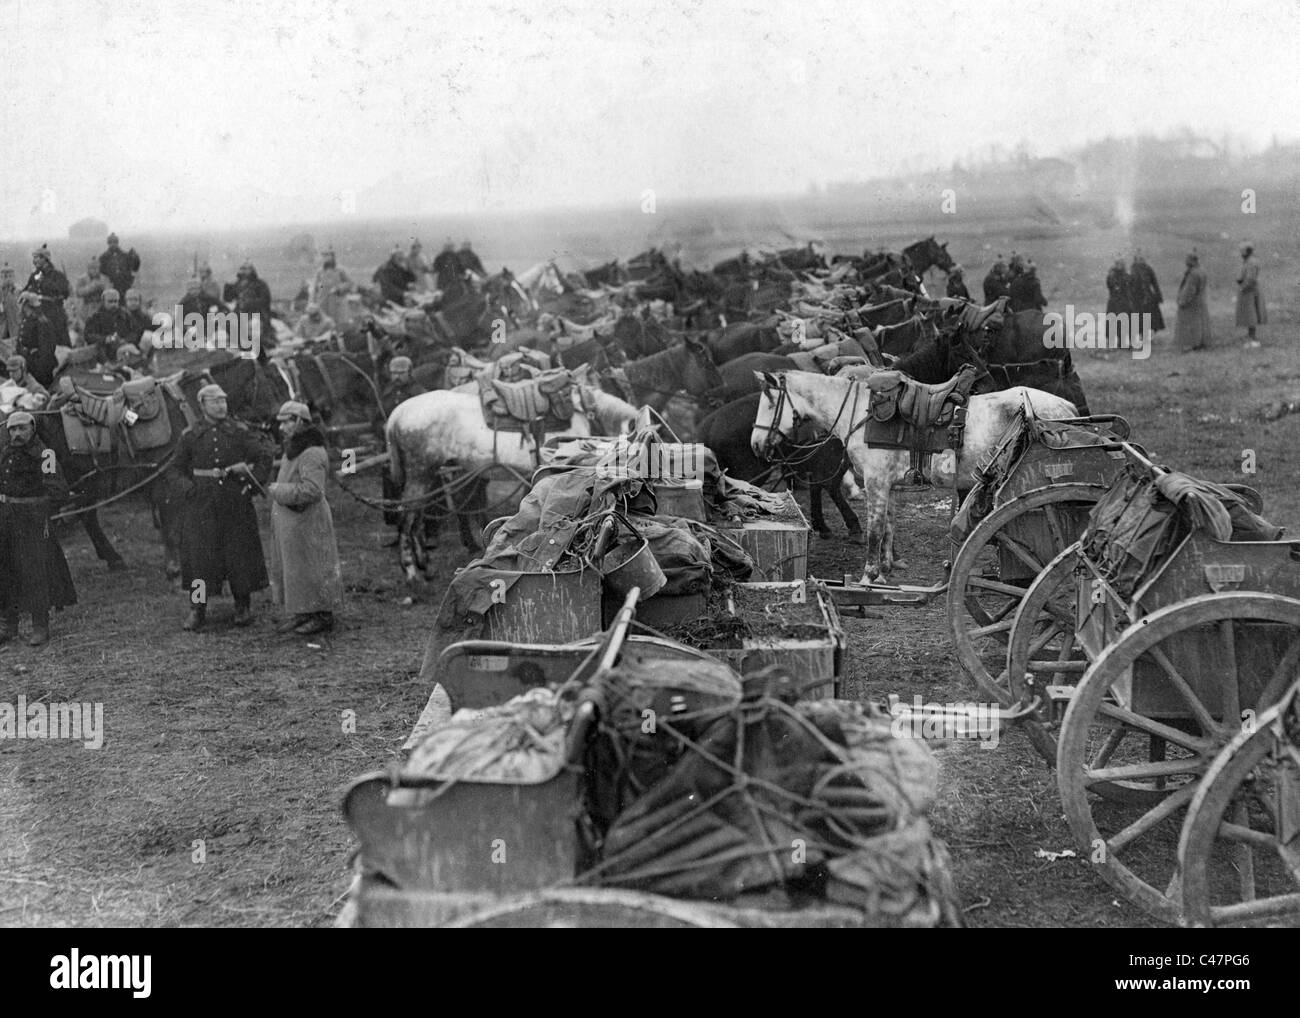 Horse Artillery First World War Stock Photos & Horse Artillery First ...